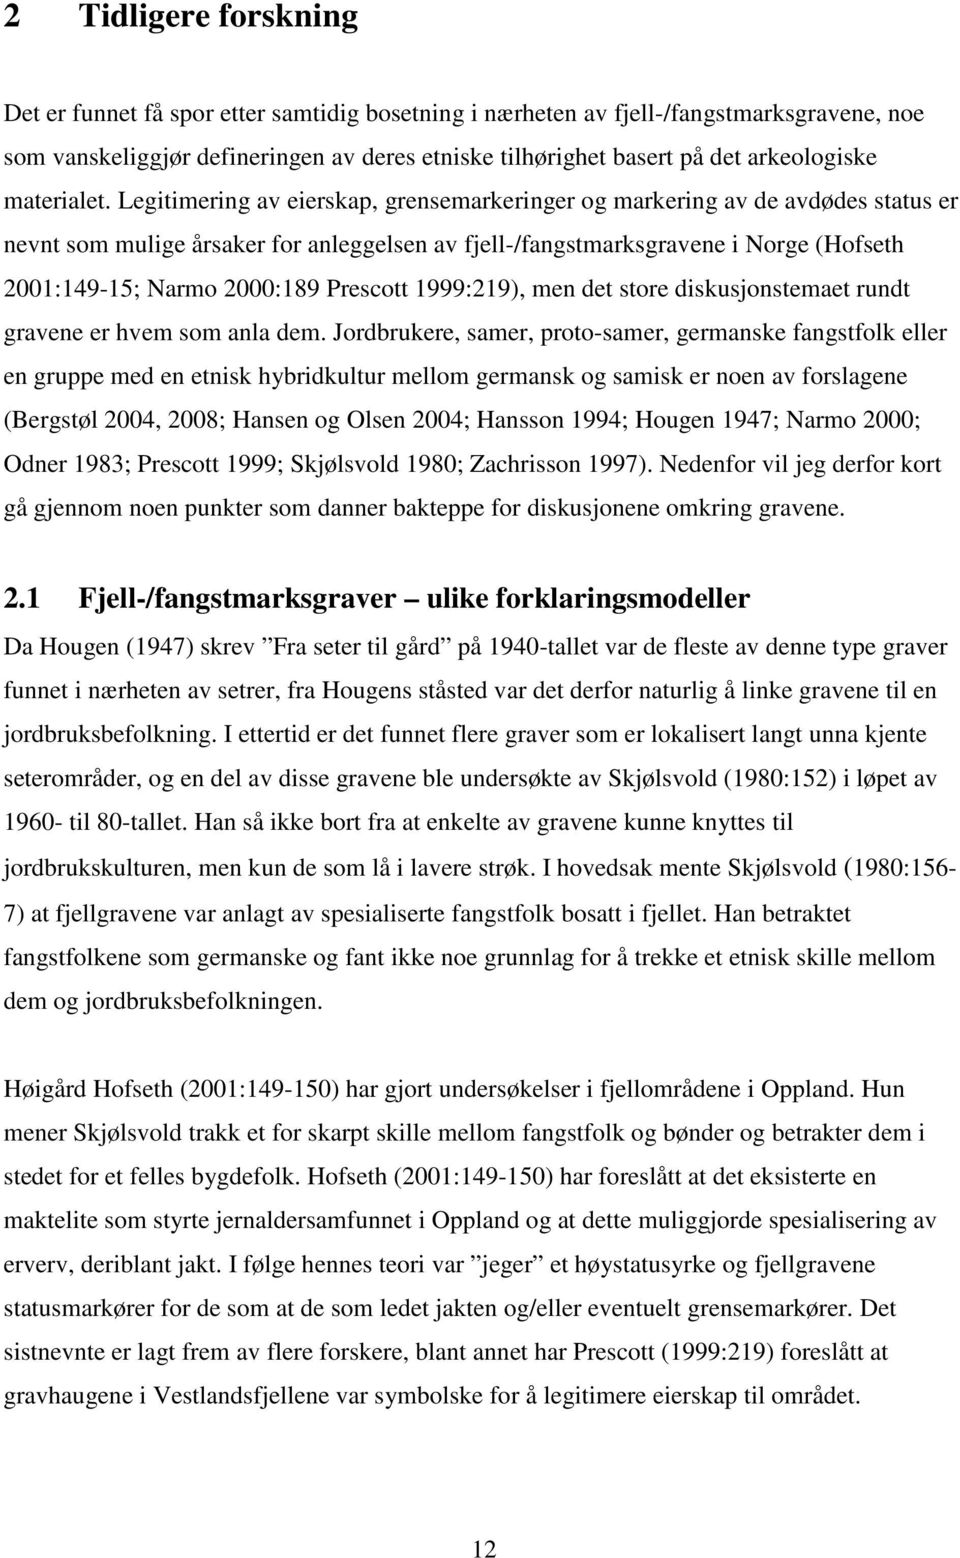 Legitimering av eierskap, grensemarkeringer og markering av de avdødes status er nevnt som mulige årsaker for anleggelsen av fjell-/fangstmarksgravene i Norge (Hofseth 2001:149-15; Narmo 2000:189